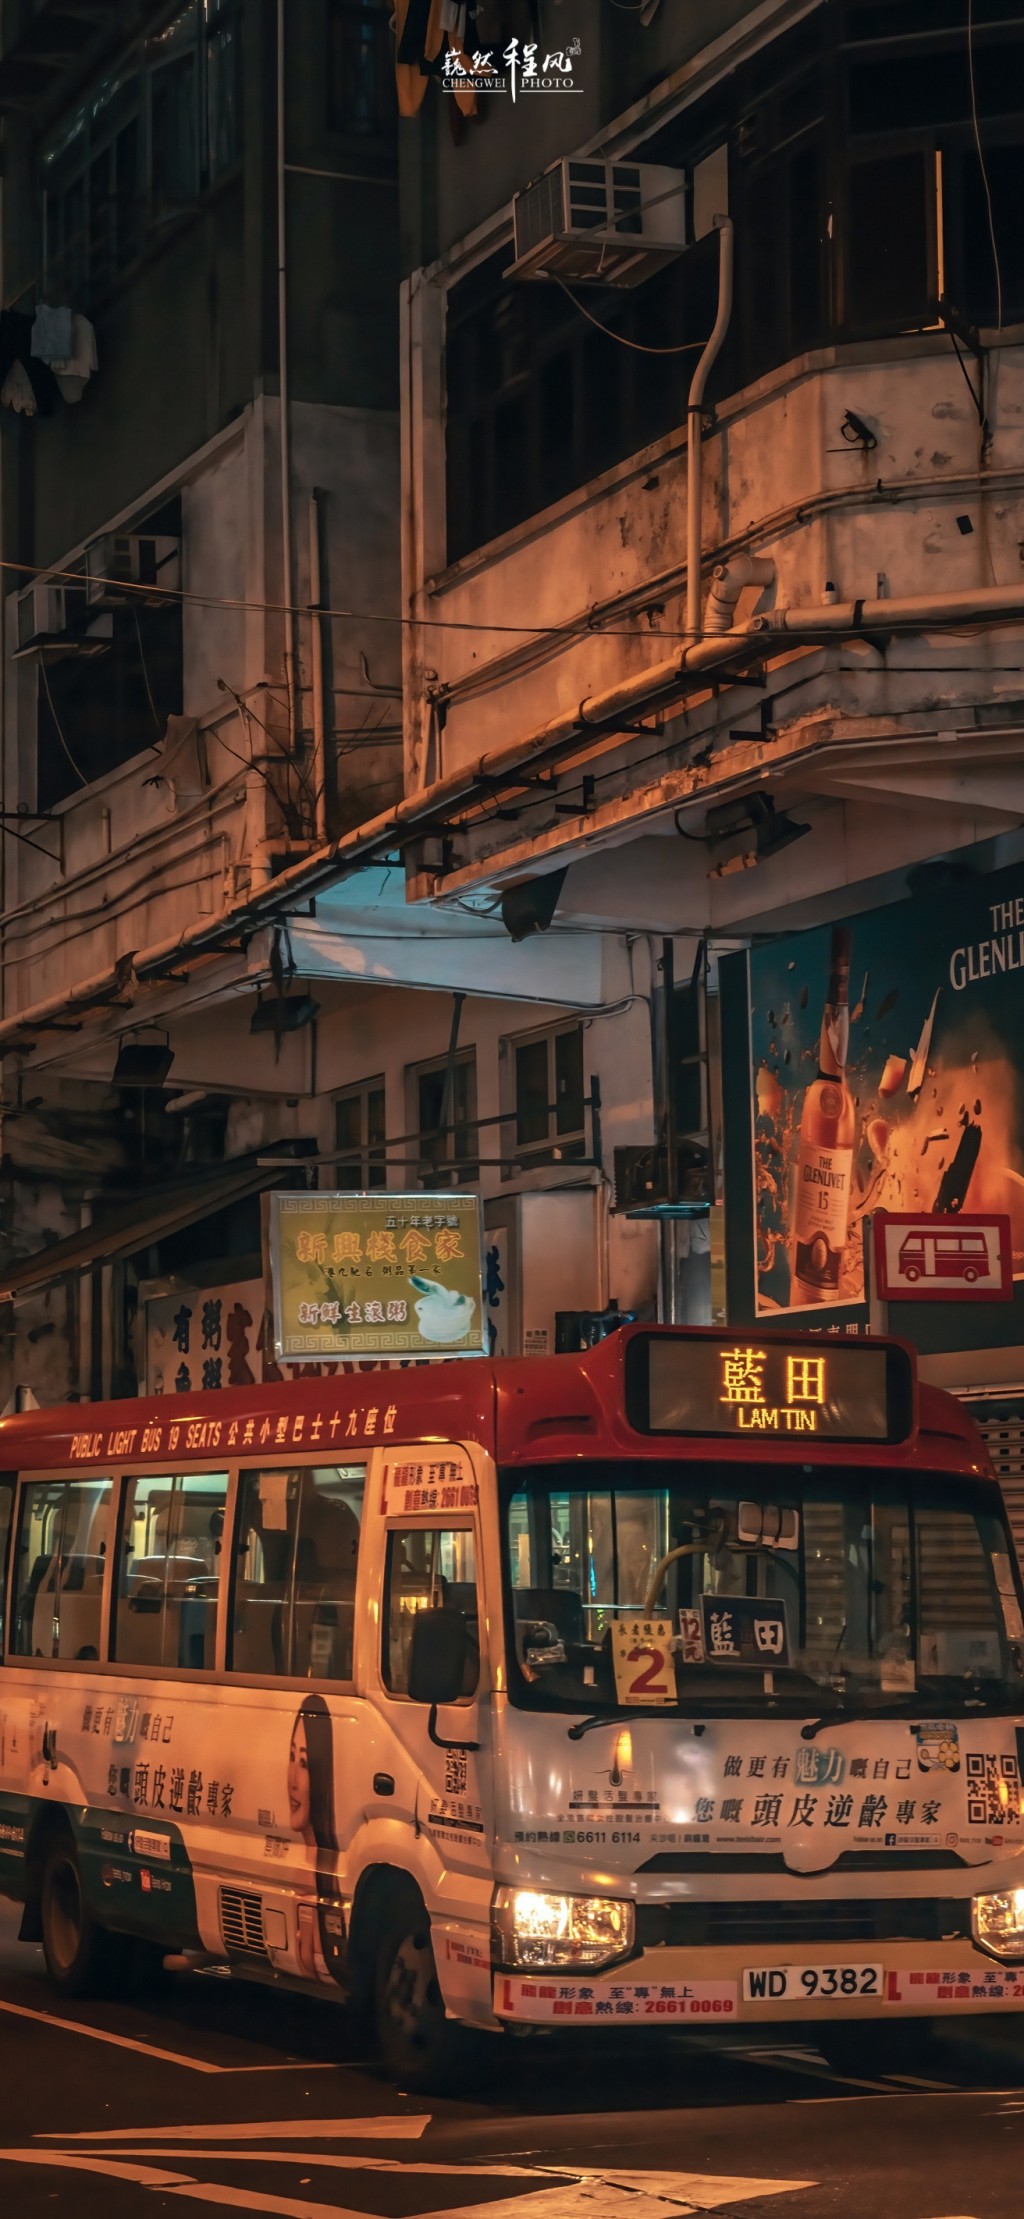 香港旺角美丽街景手机壁纸